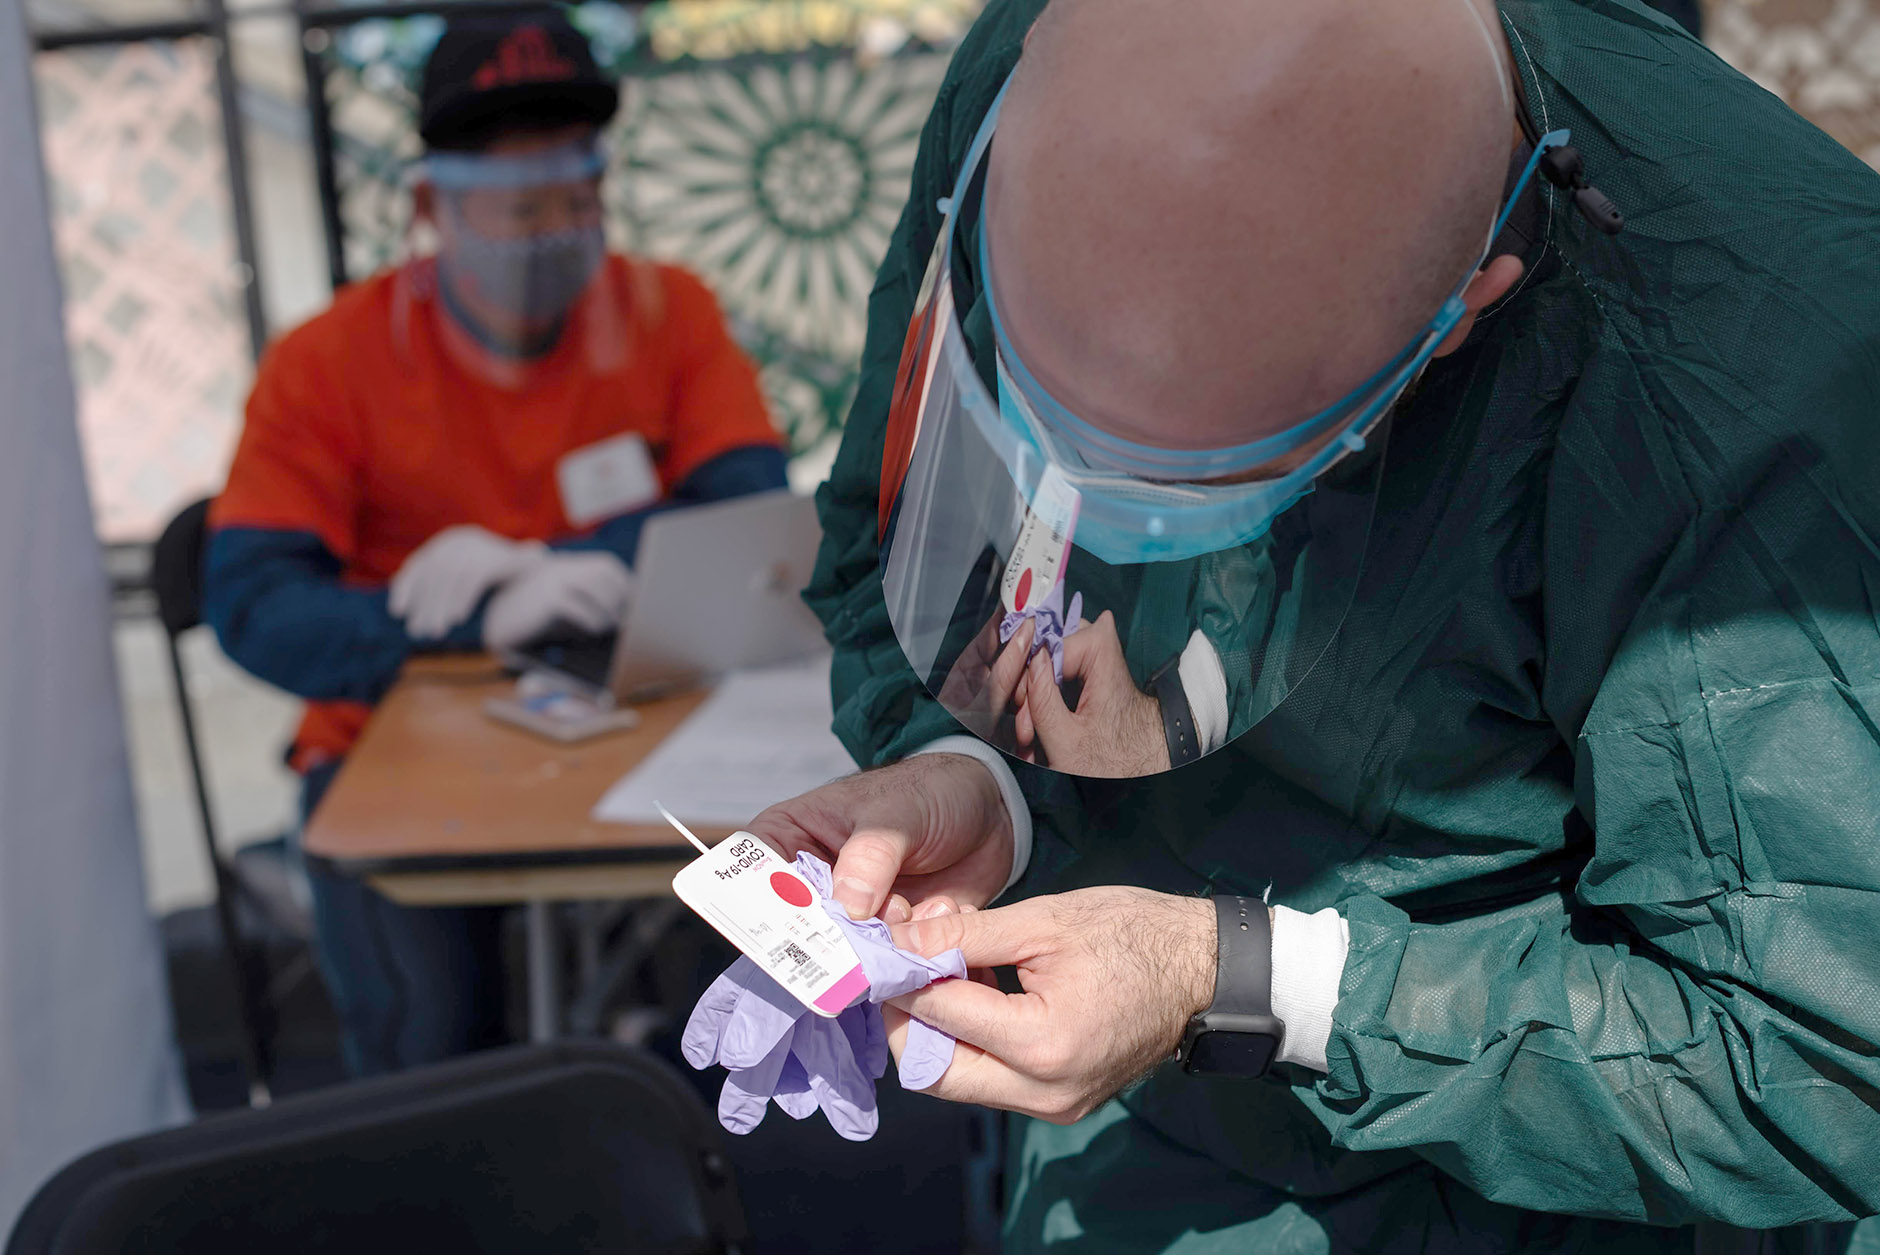 Mε τη μέθοδο ταχείας ανίχνευσης αντιγόνου (rapid test) προχωρεί το Υπουργείο Υγείας σε δειγματοληψίες στη Λάρνακα